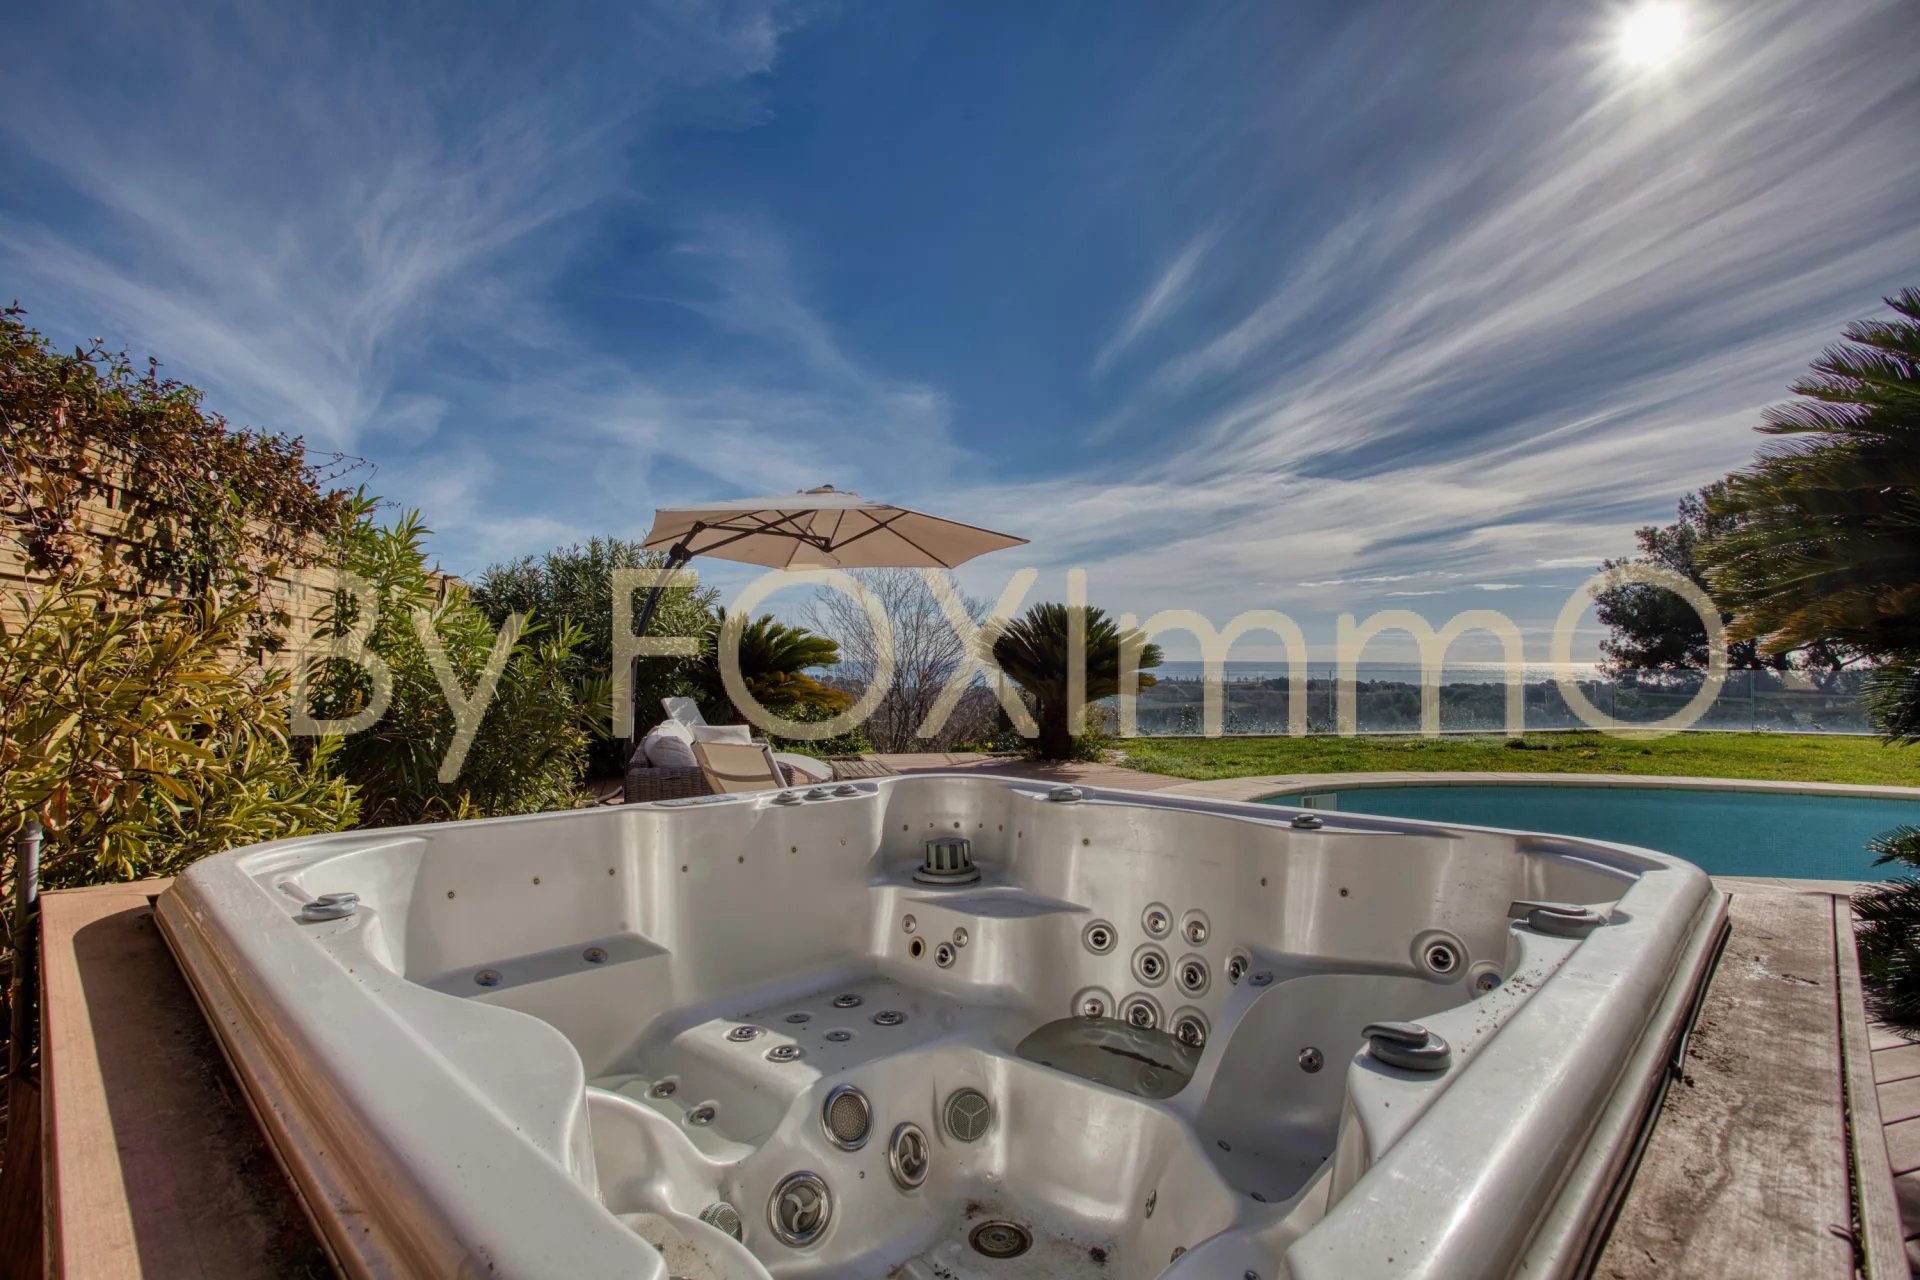 In Costa Azzurra, Villa con vista panoramica sul mare, 3/4 camere da letto, giardino pianeggiante, piscina, jacuzzi, garage e parcheggio